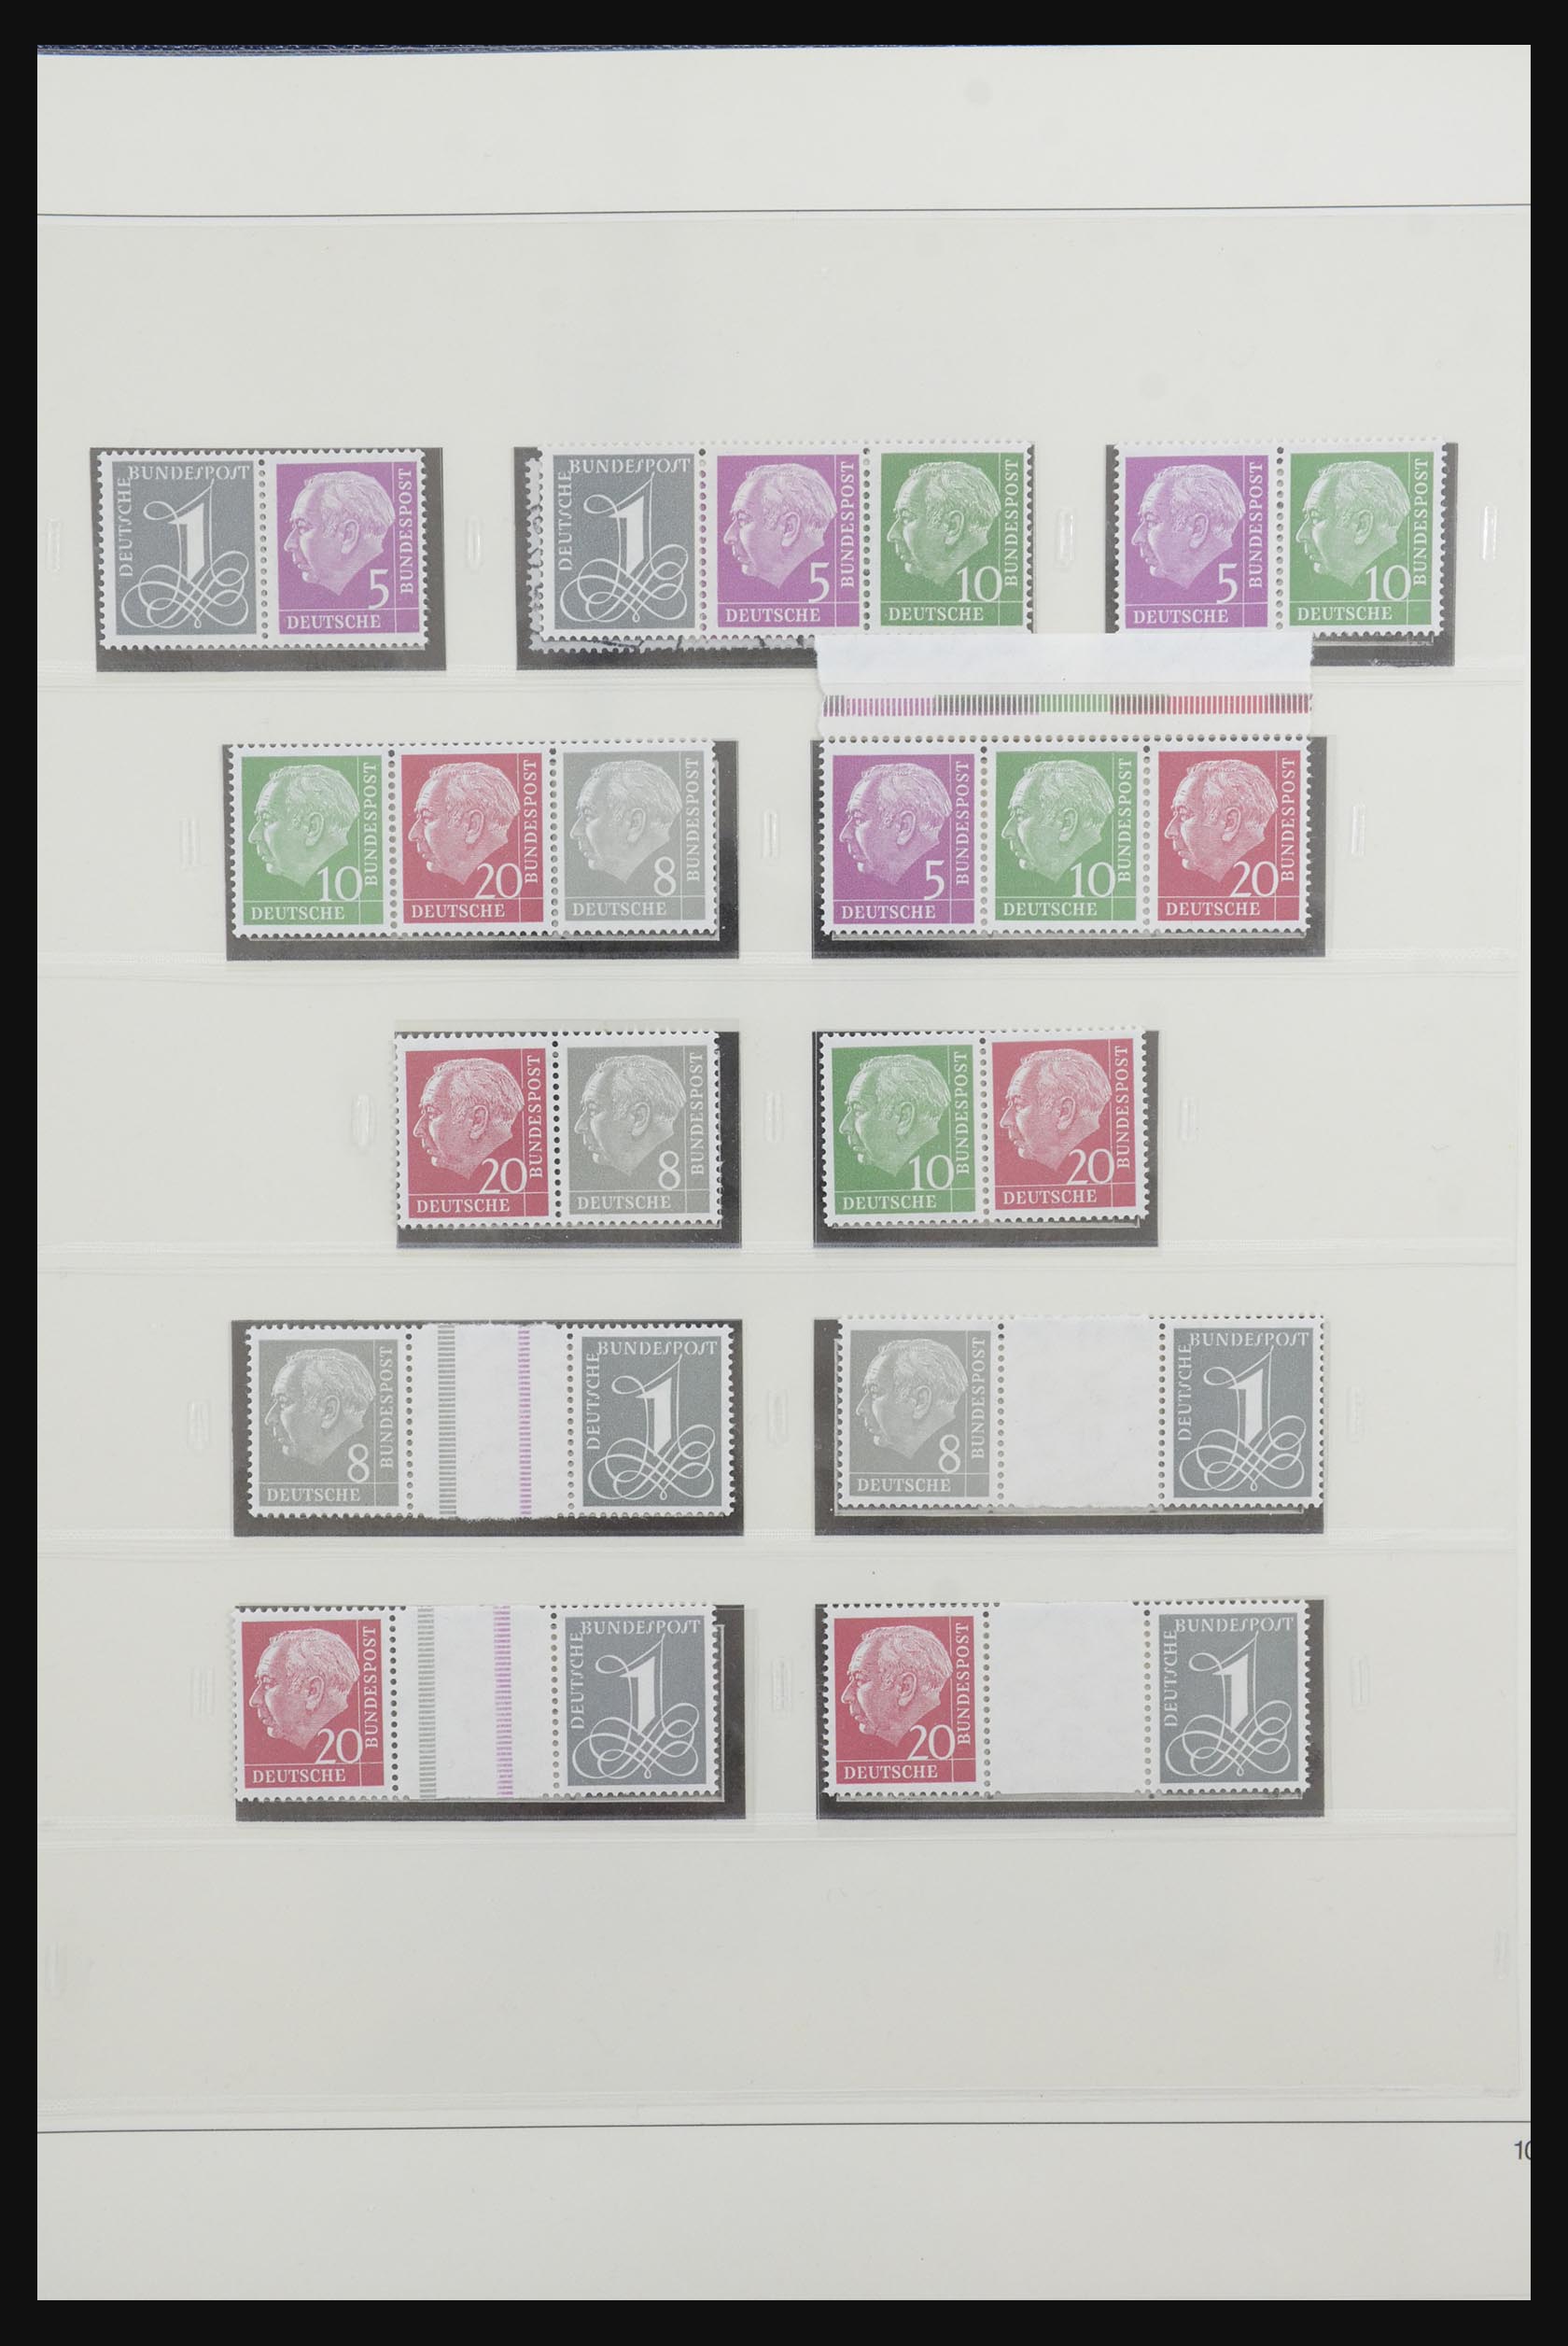 31842 012 - 31842 Bundespost combinaties 1951-2003.